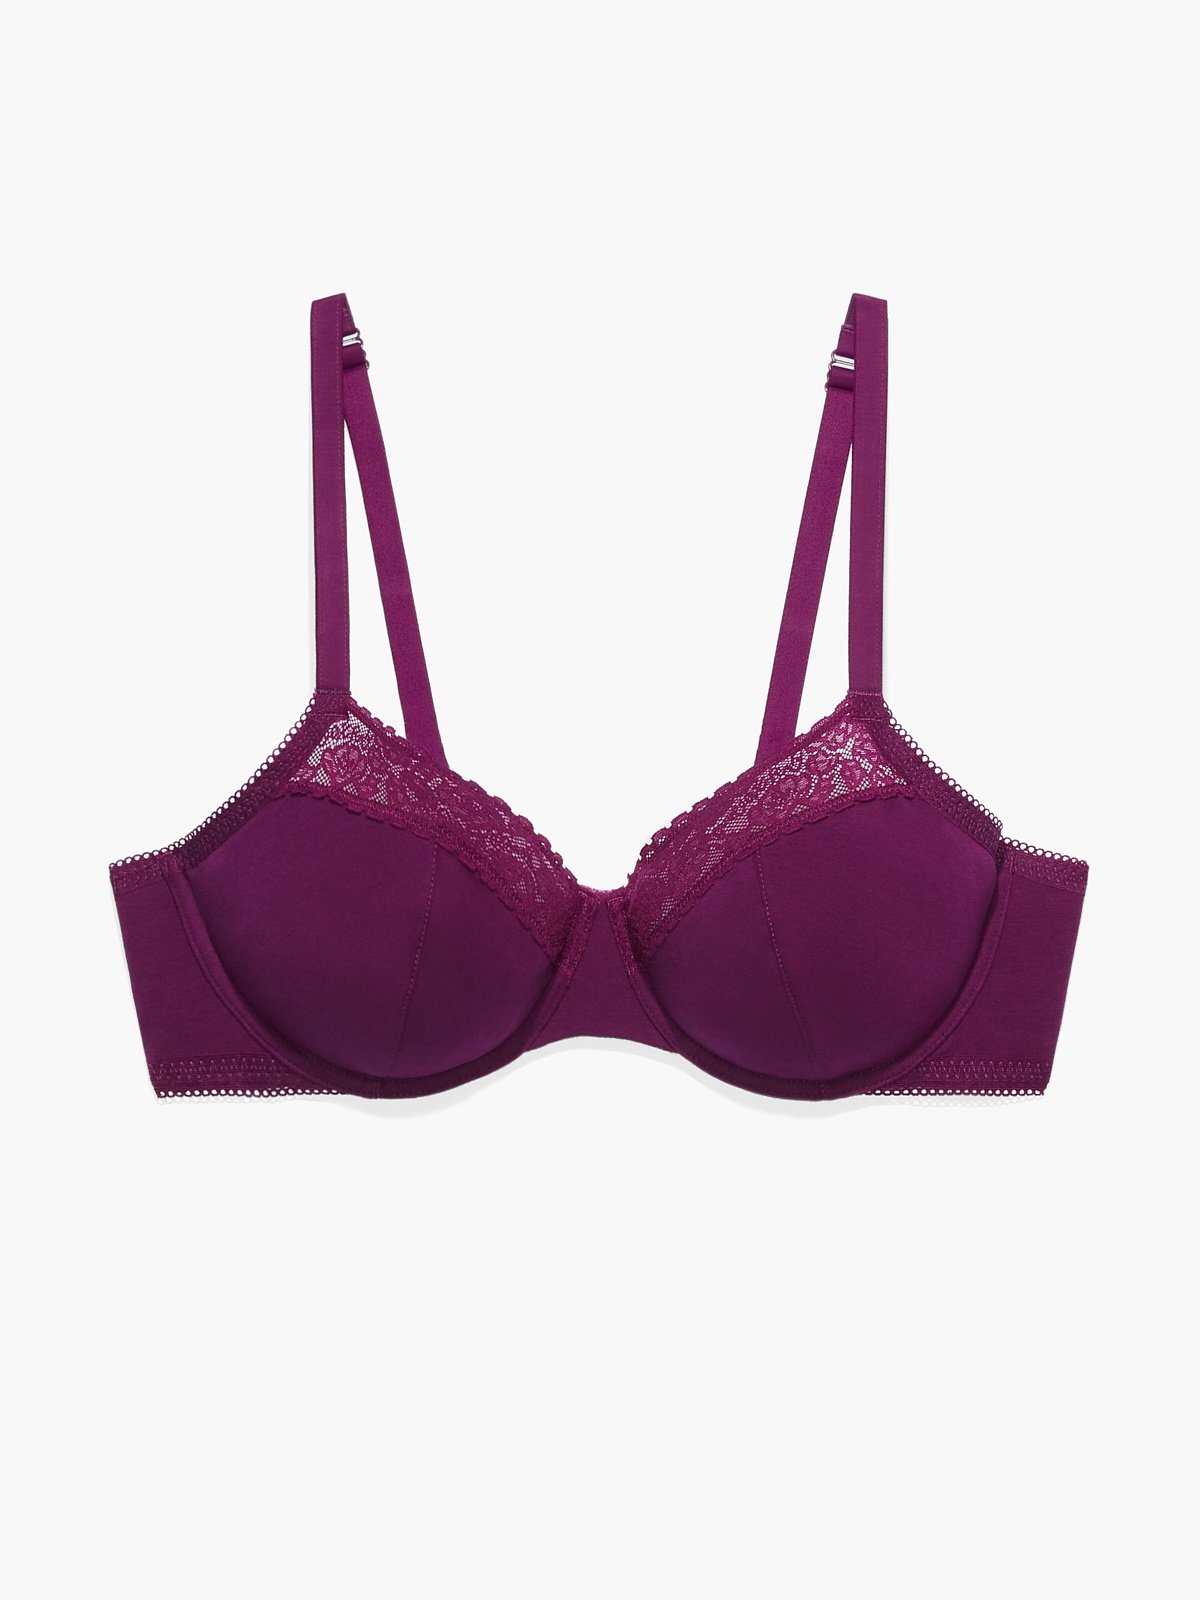 Lace Unpadded Intimates, Purple Lace Bralette, Unpadded Bras Women